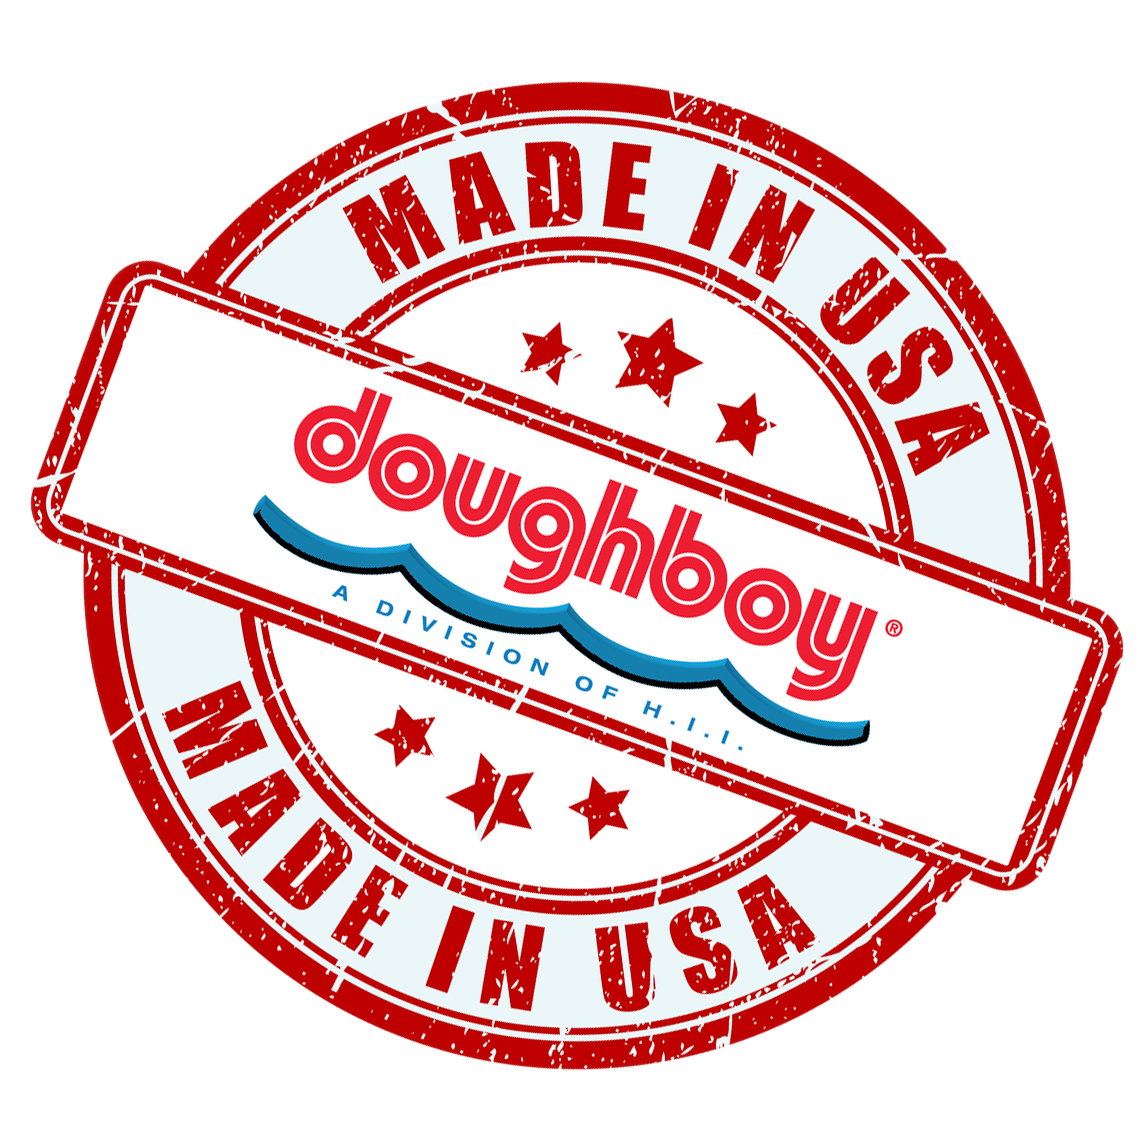 made in usa doughboy logo